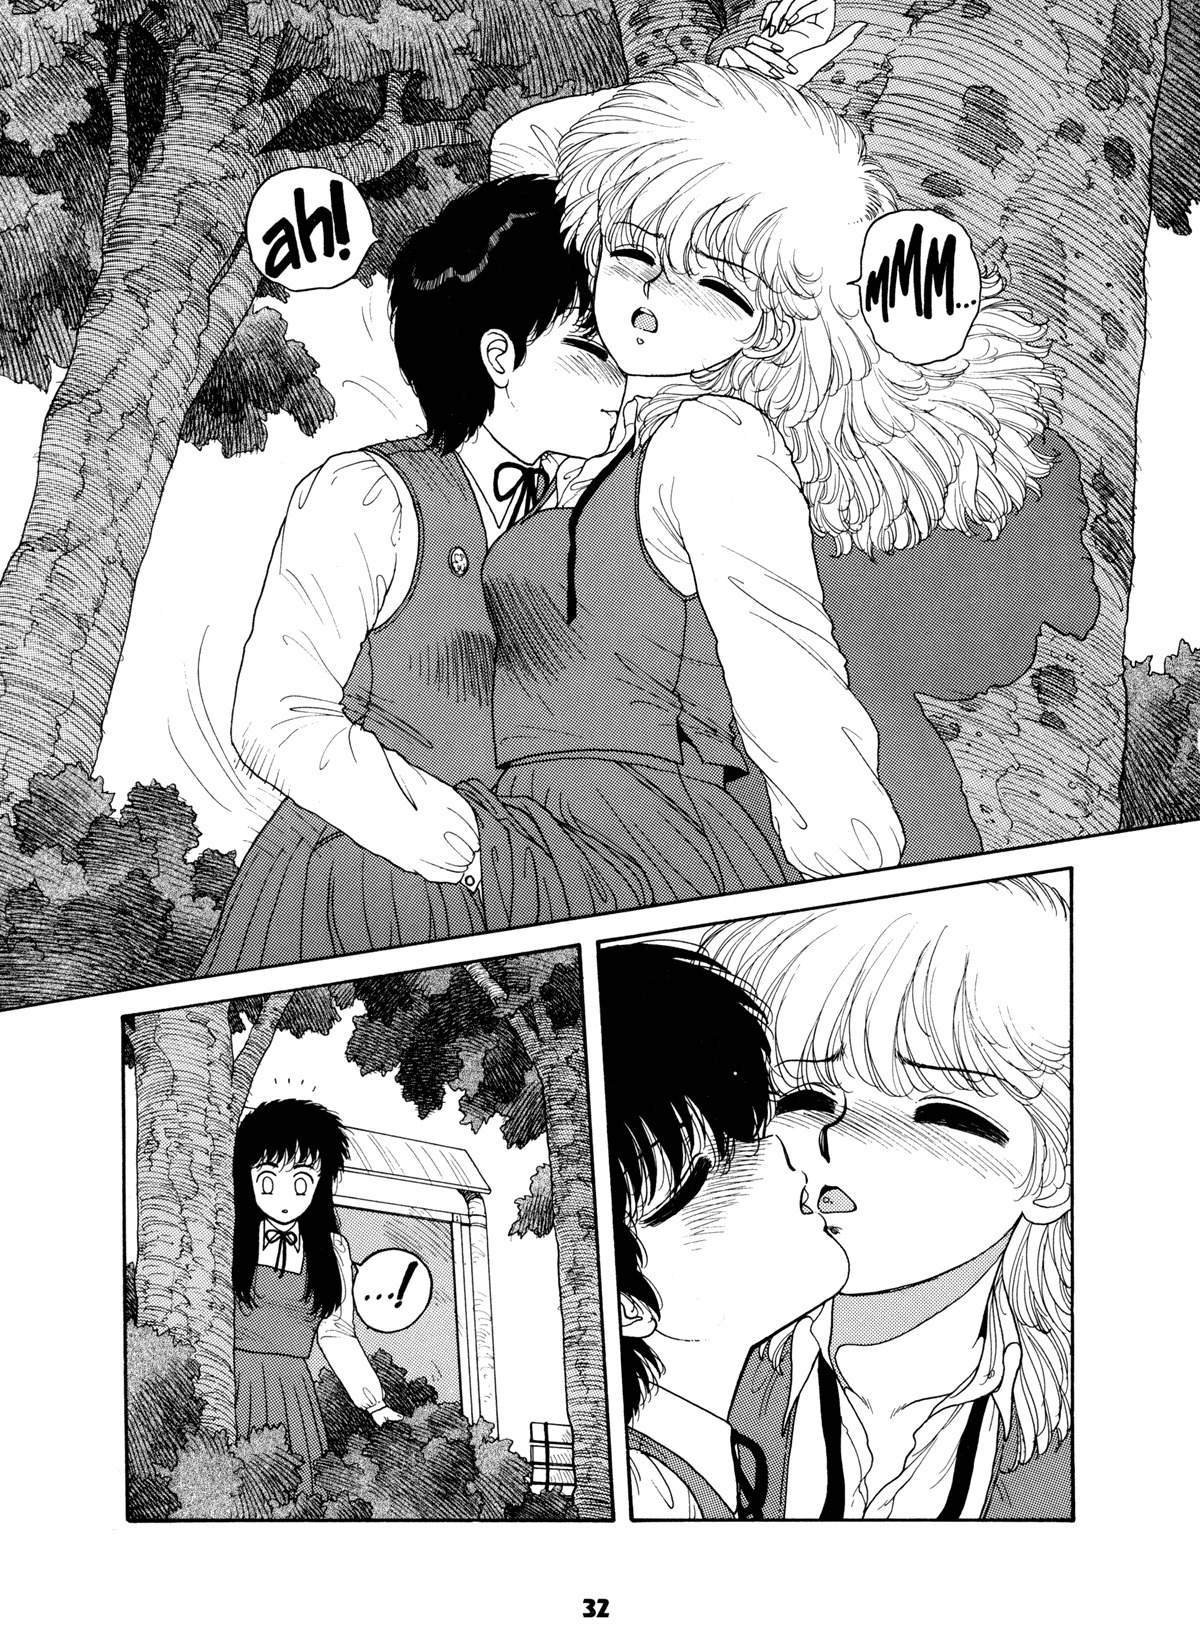 Misty Girl Extreme 31 hentai manga